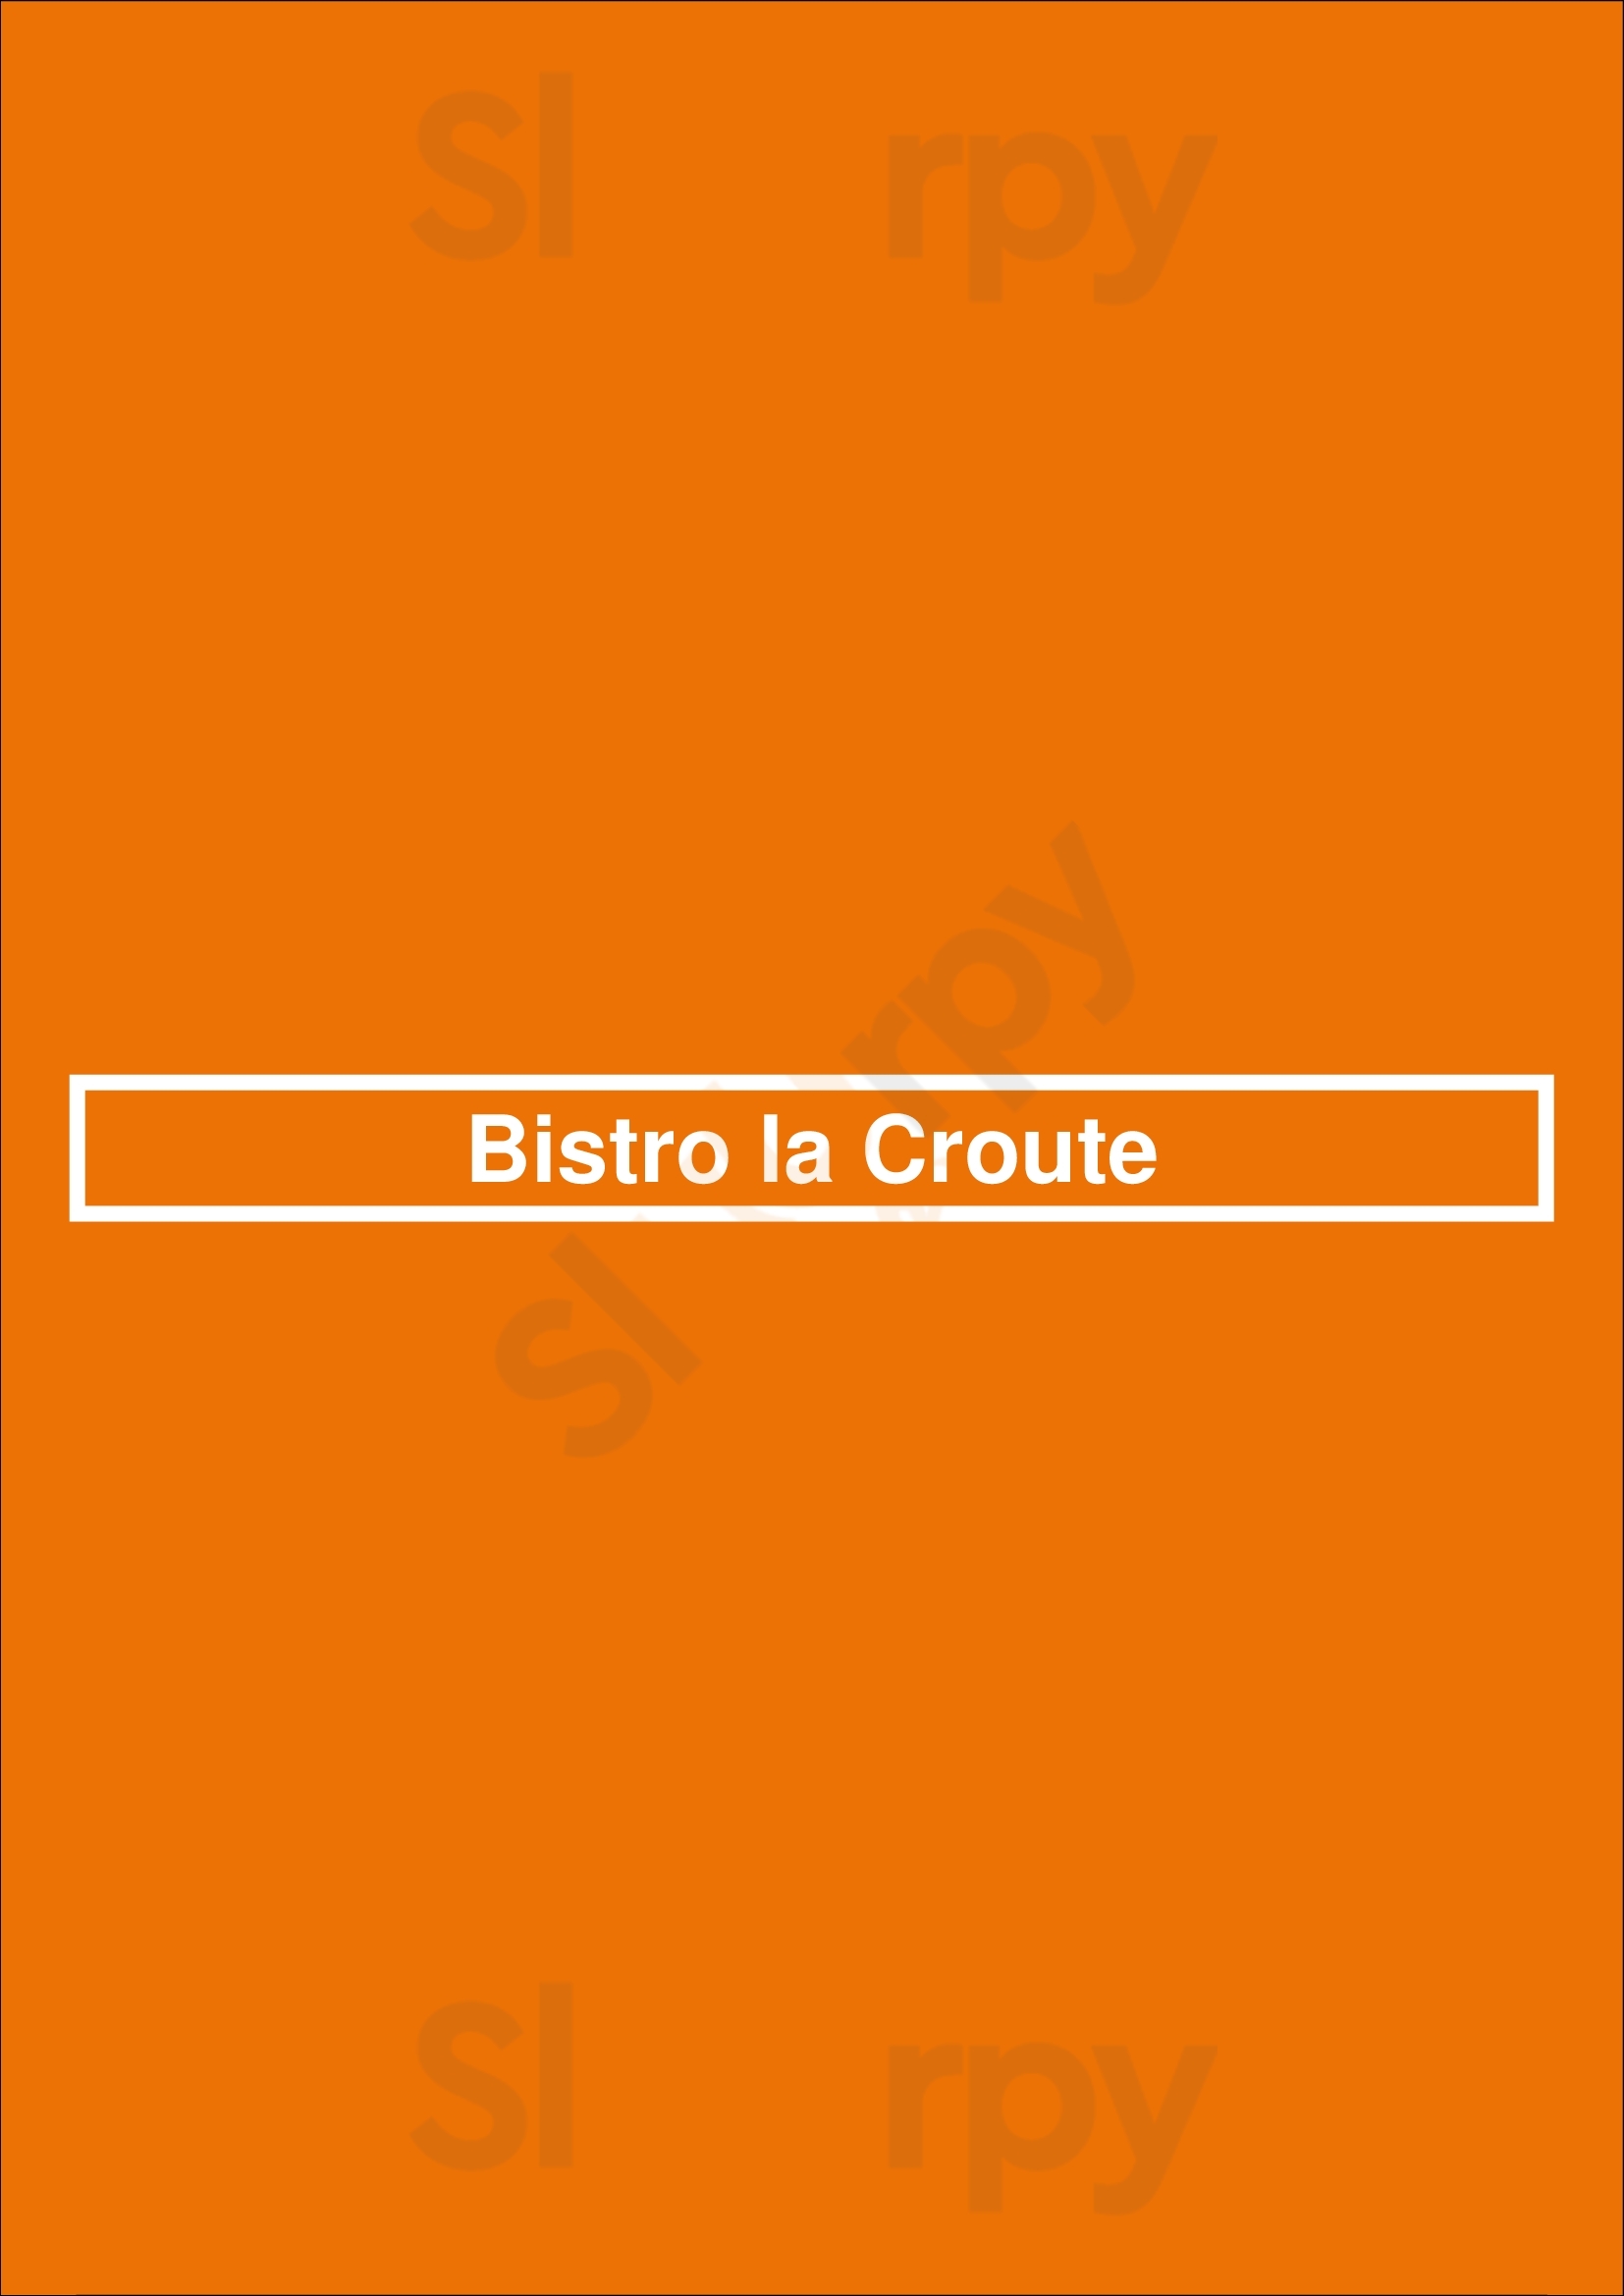 Bistro La Croute Warmond Menu - 1